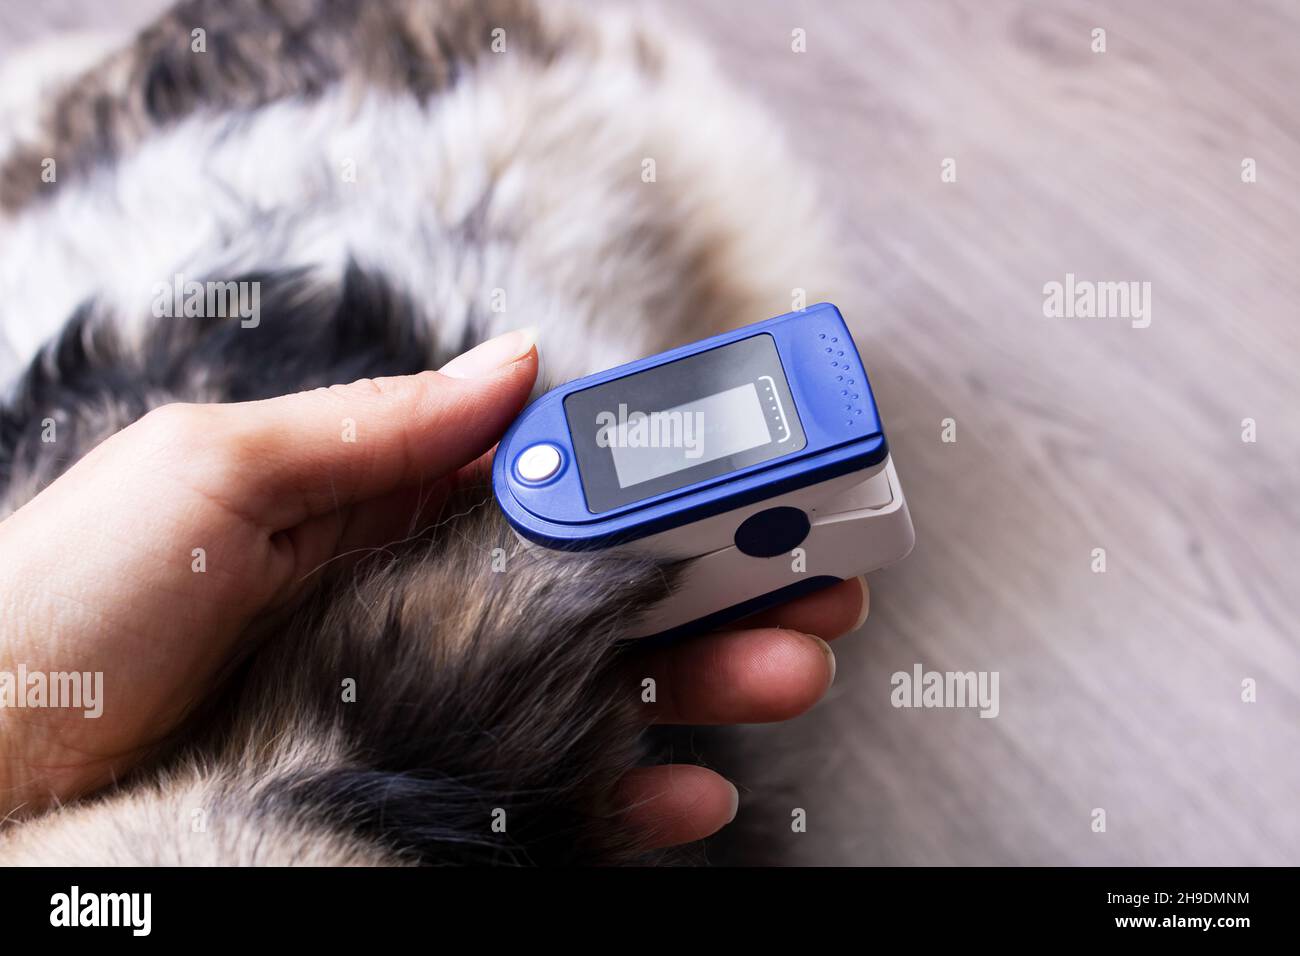 Misurare i cani immagini e fotografie stock ad alta risoluzione - Alamy